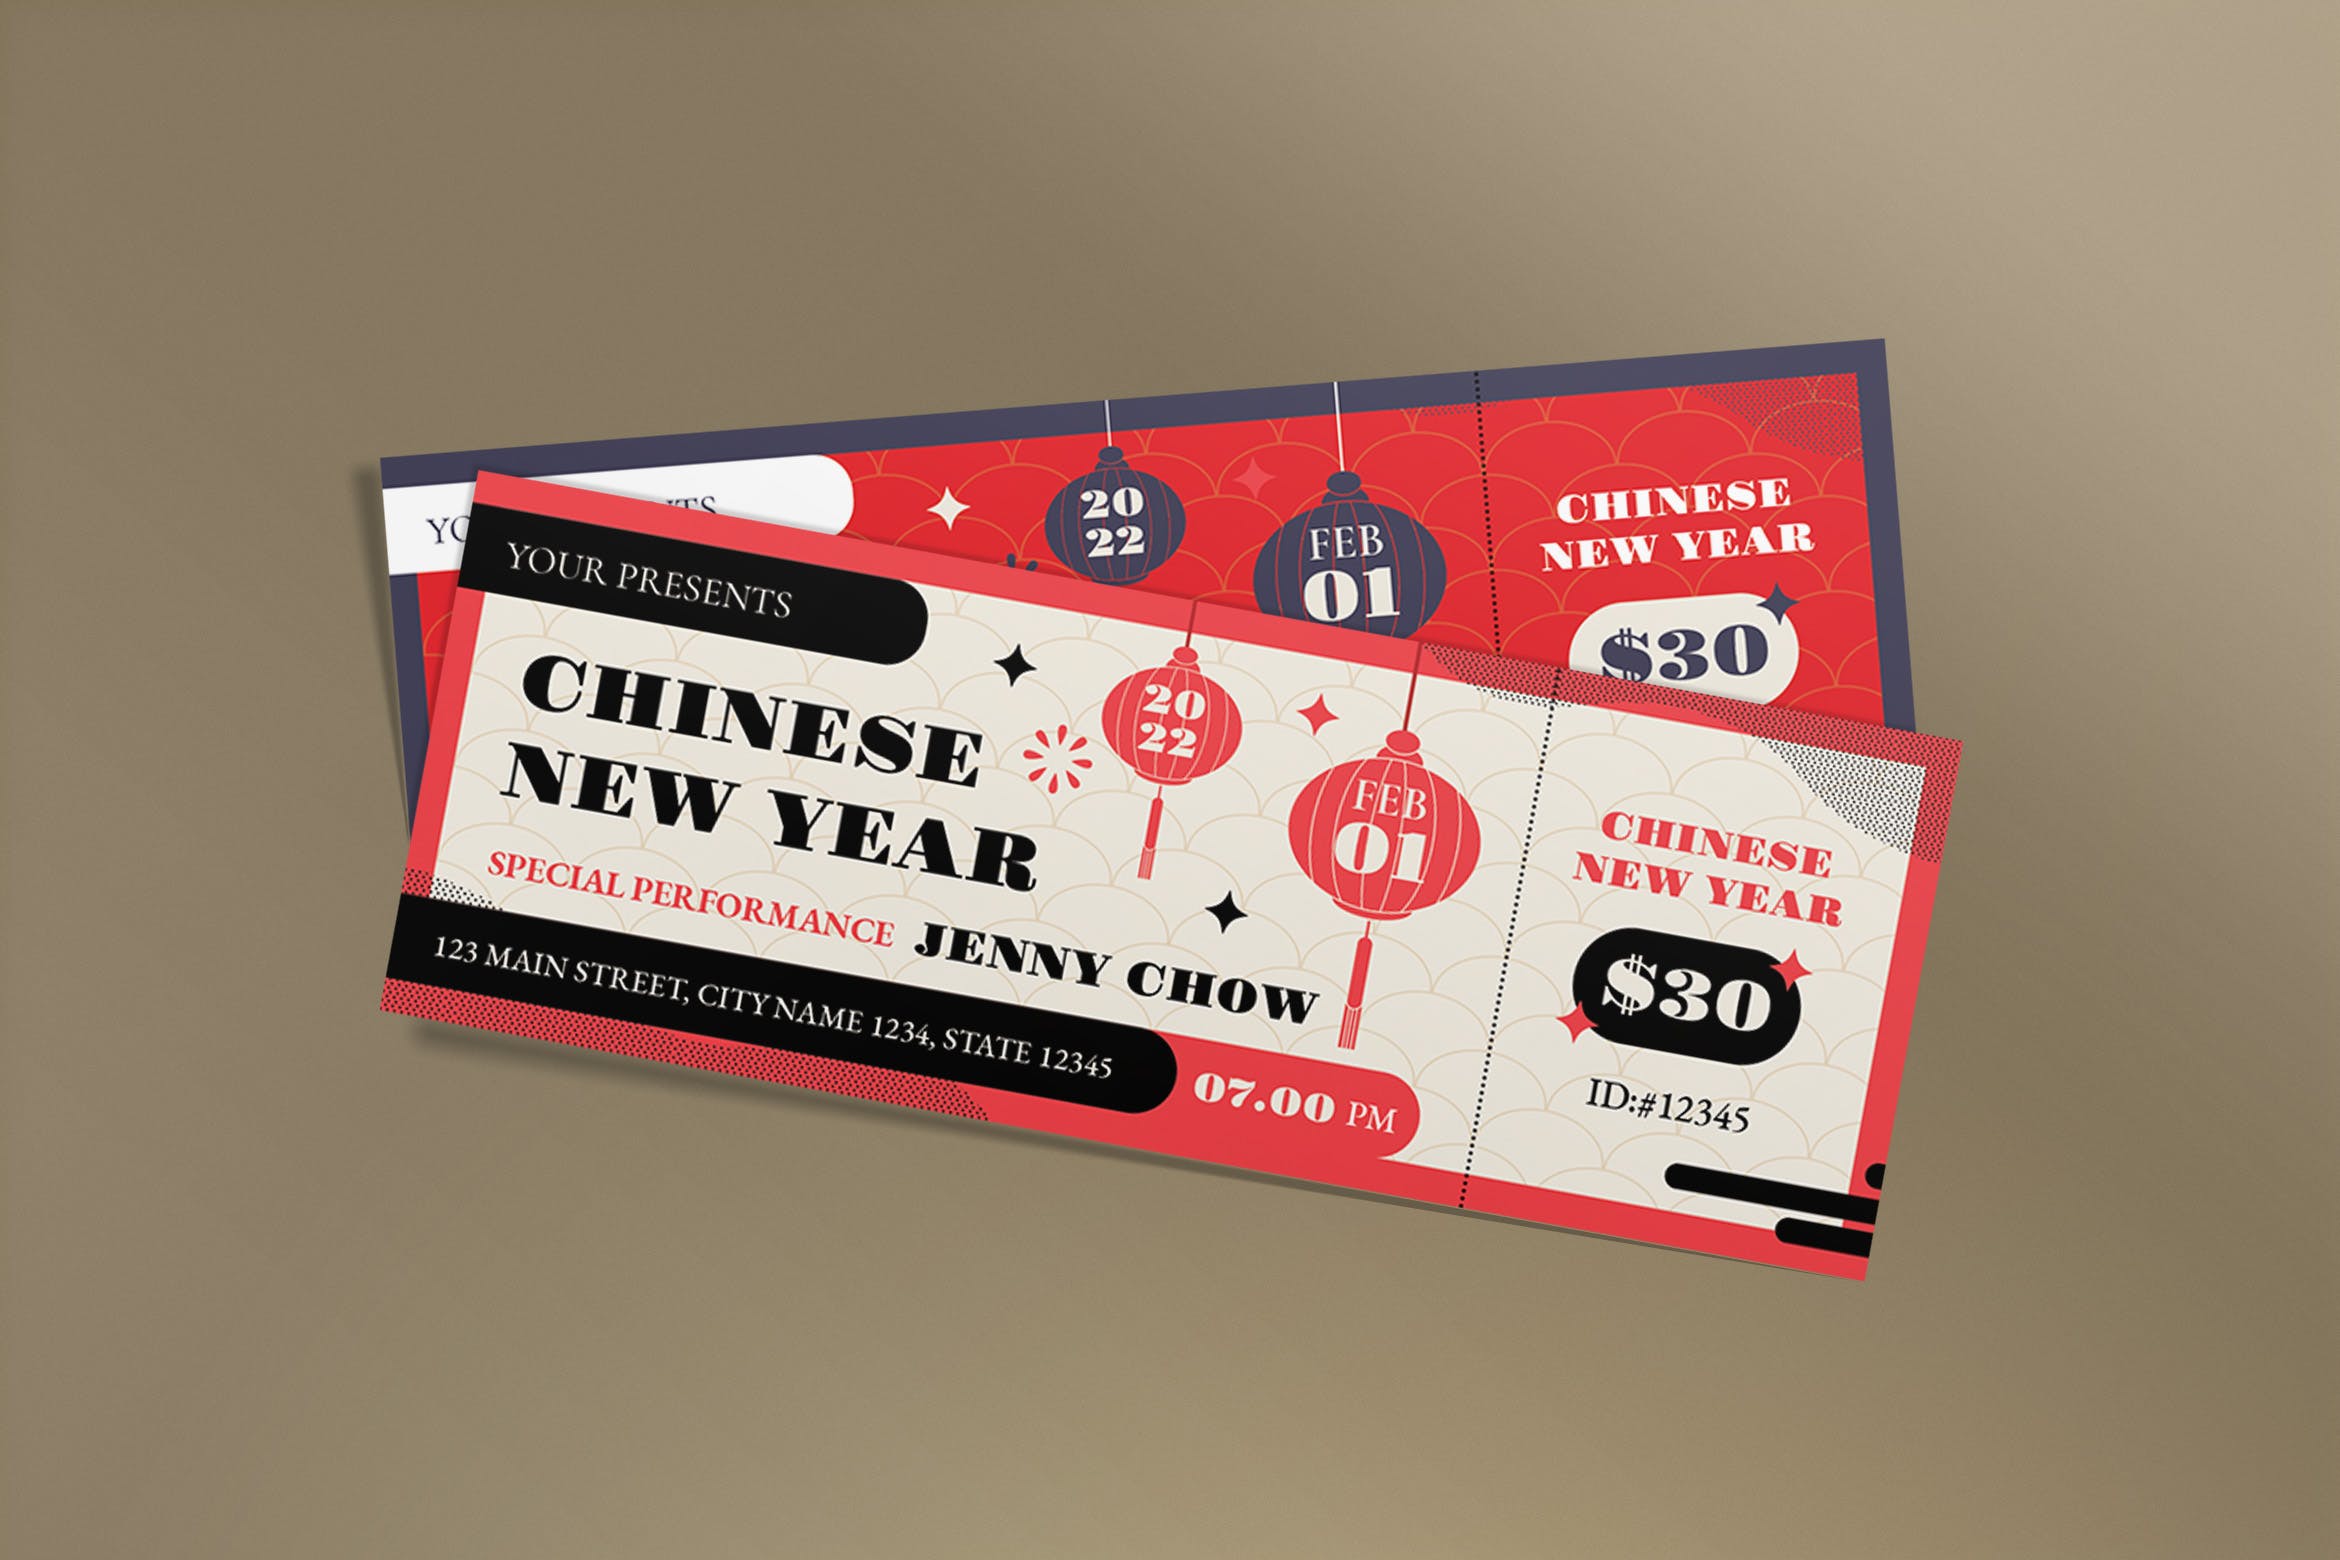 新年表演活动门票模板 Chinese New Year Ticket 设计素材 第1张